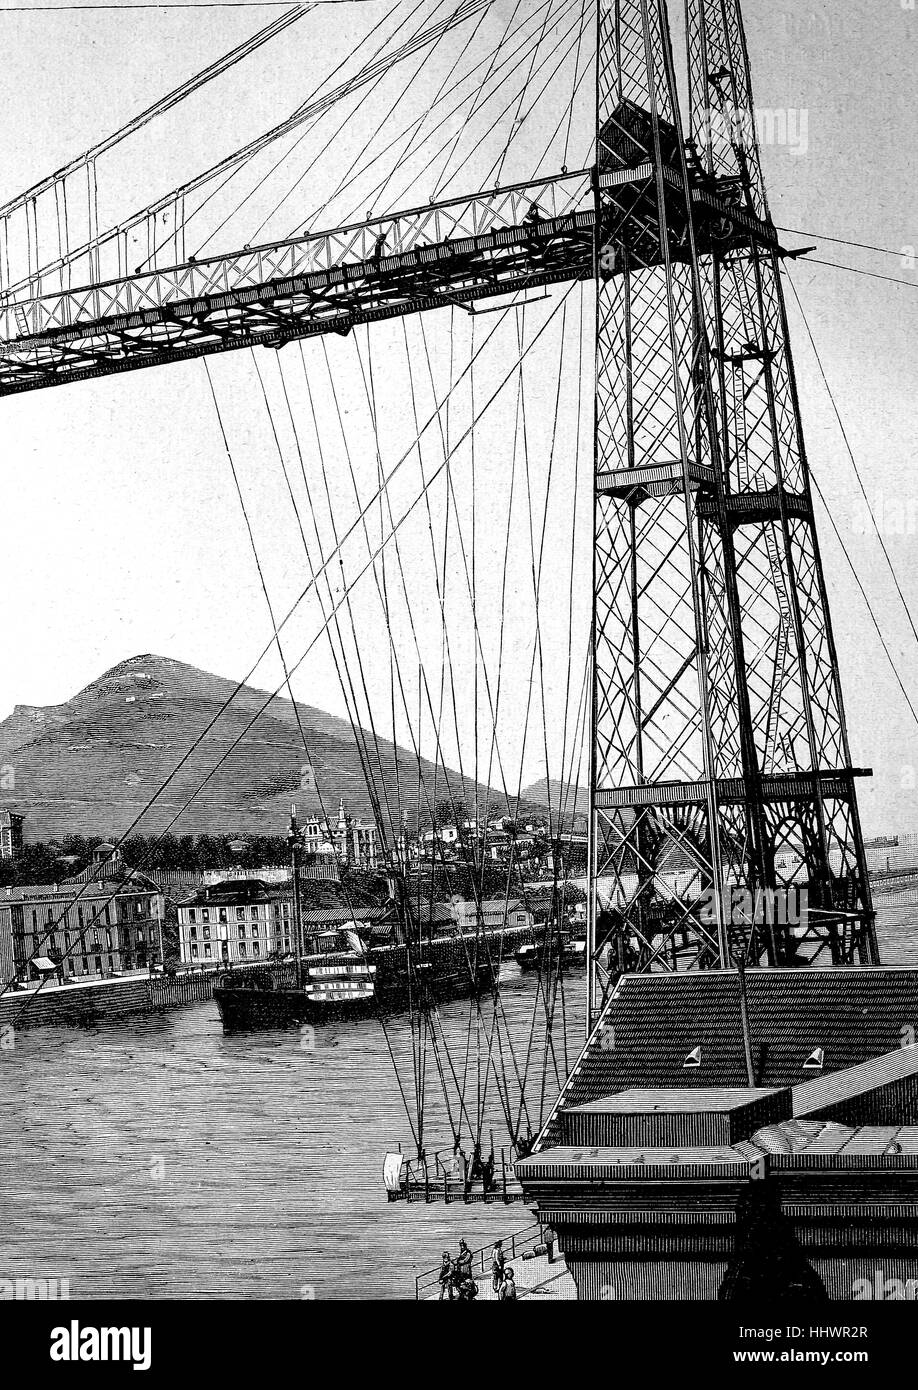 Il golfo di Guascogna Bridge, Puente de Portugalete, ma in Spagna è conosciuto soprattutto come Puente Colgante, ponte sospeso. Non si tratta di un ponte di sospensione in senso tecnico, ma una sospensione del traghetto, un alto ponte con annesso Haengebarke, il traghetto fu inaugurato nel 1893, immagine storica o illustrazione, pubblicato 1890, digitale migliorata Foto Stock